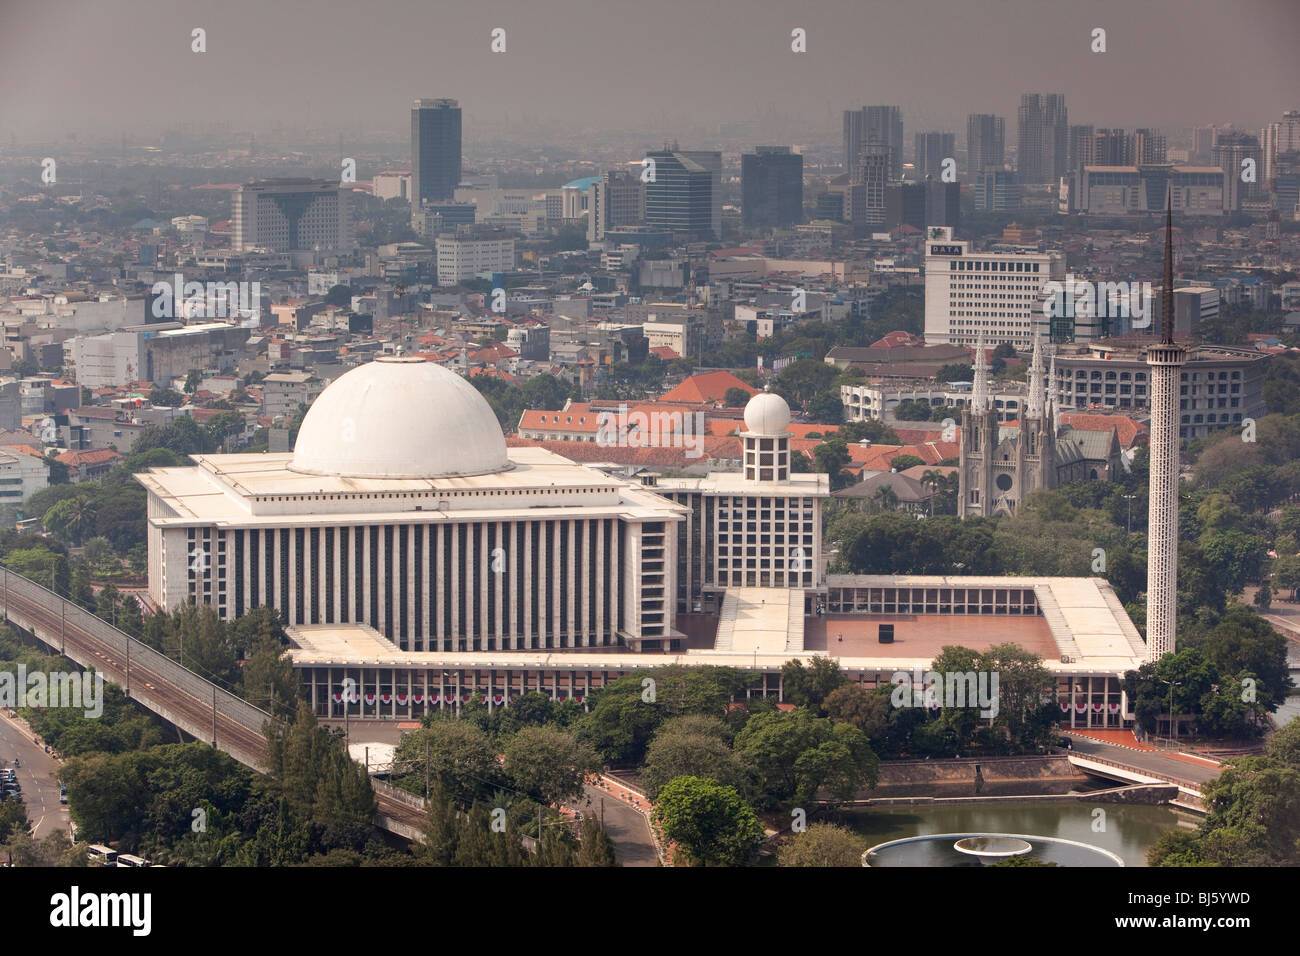 L'Indonésie, Java, Jakarta, la Mosquée Istiqlal à partir de la plate-forme d'observation des Monas National Monument Banque D'Images